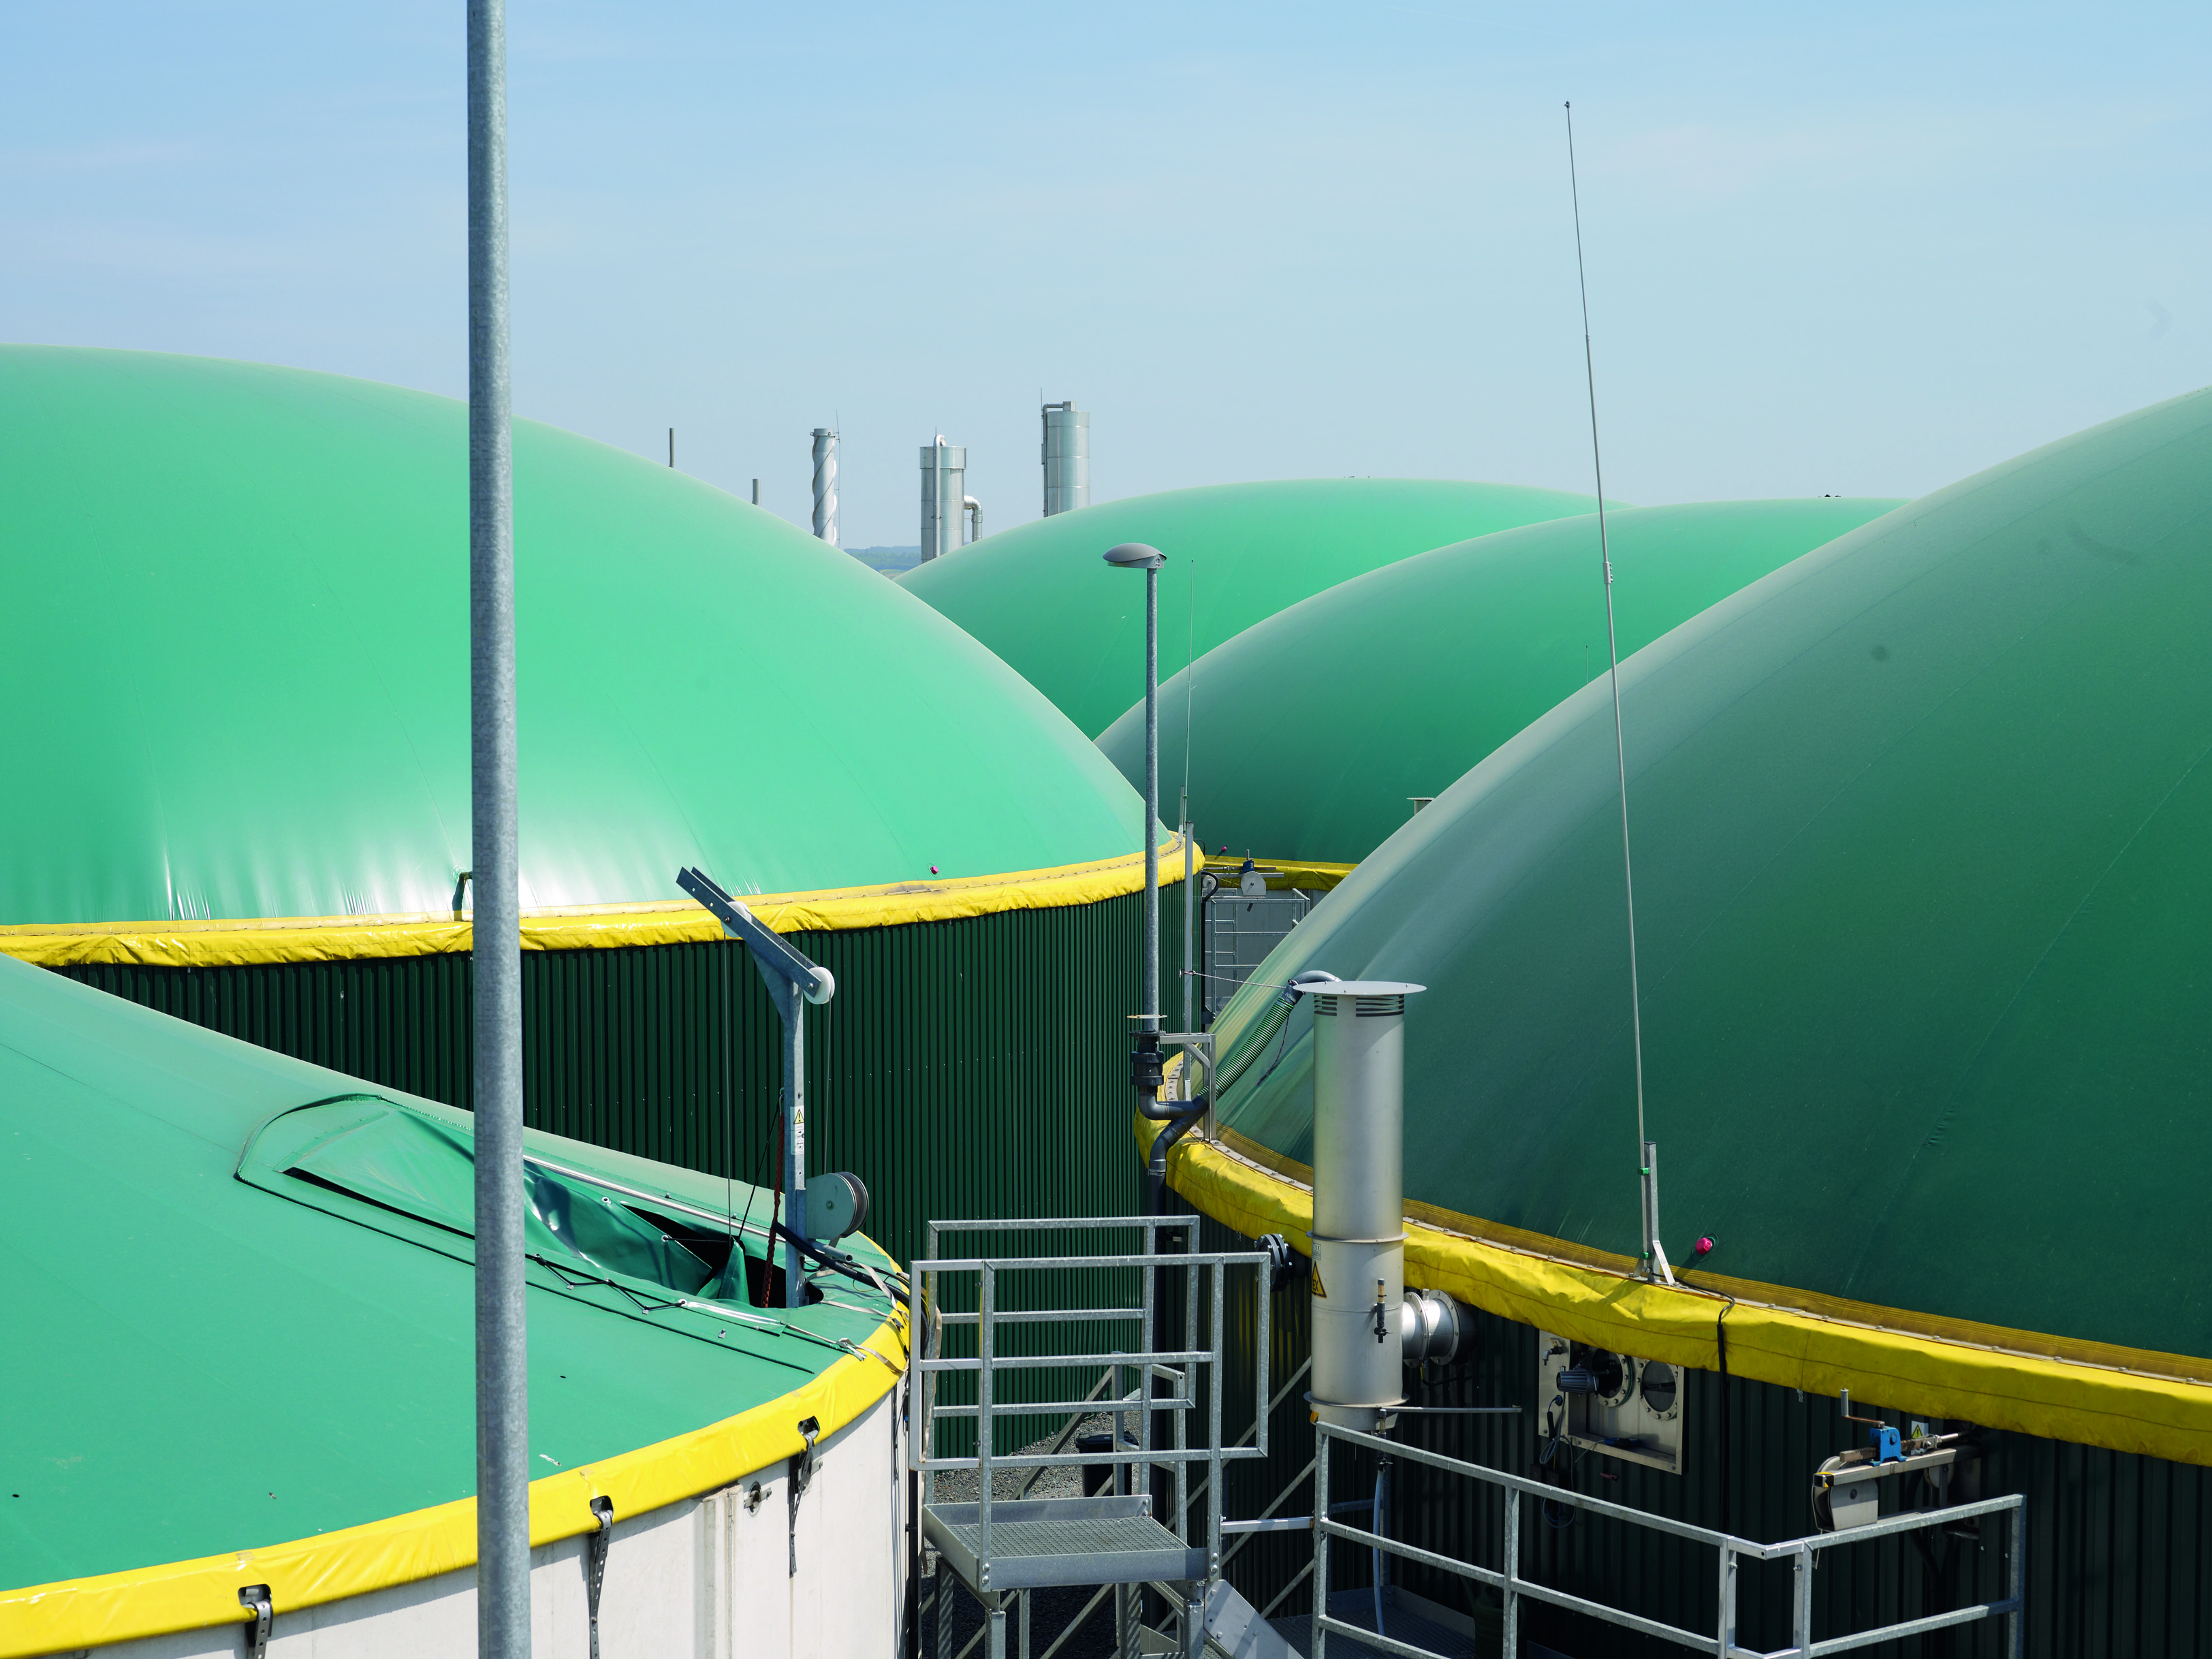 Biogasanlage Willingshausen, mit einer Anlagenleistung von 800 Nm³/h und einer Jahresproduktion von 9,1 Mio. Nm³ Biogas und 3,5 Mio. Nm³ Biomethan. © ÖKOBIT GmbH